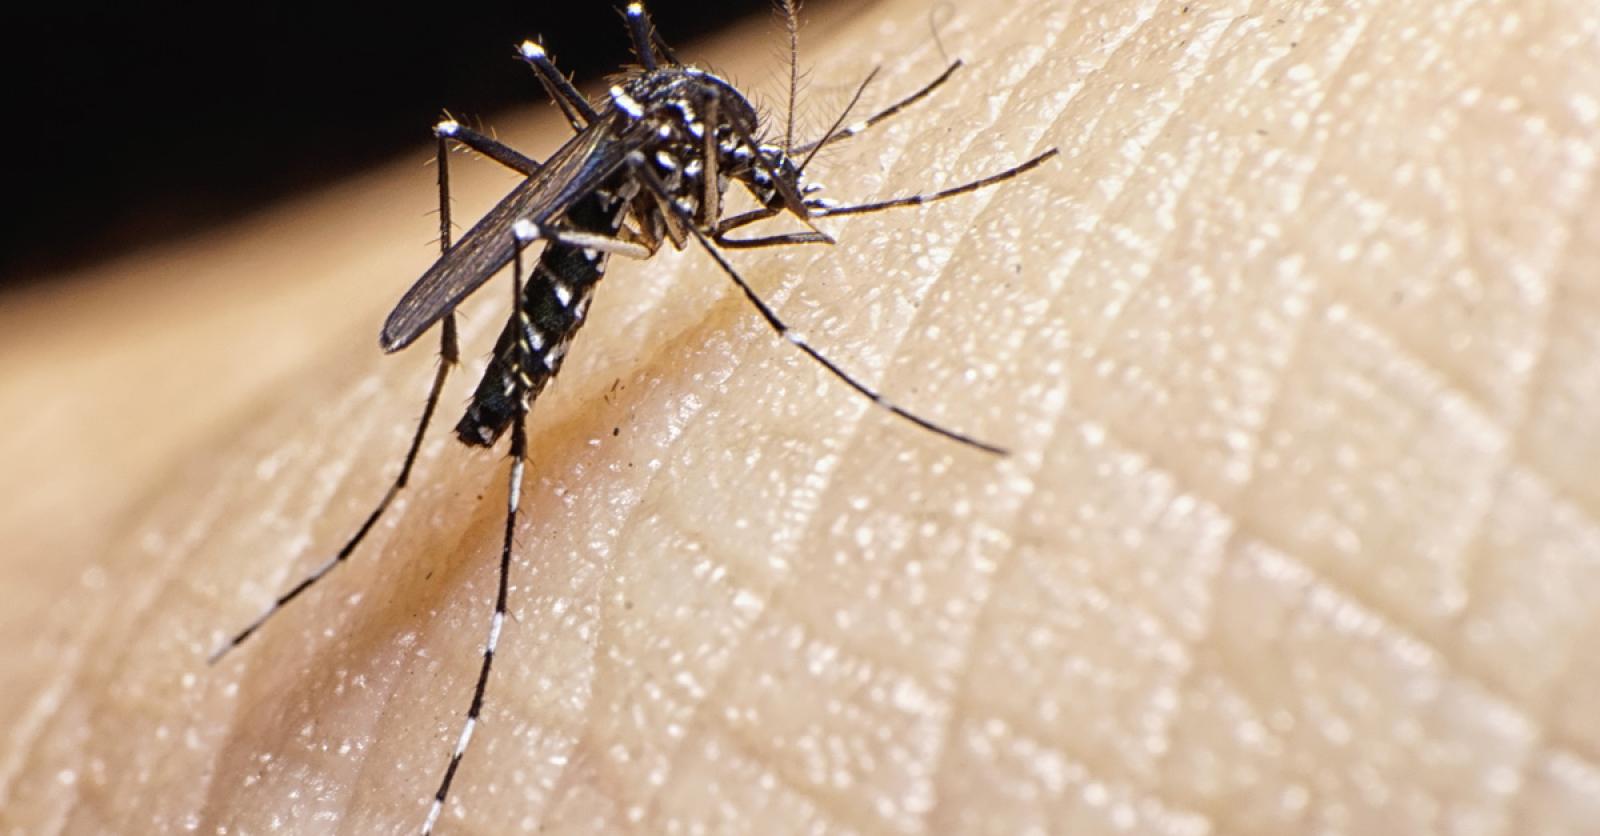 Comment le moustique vous repère